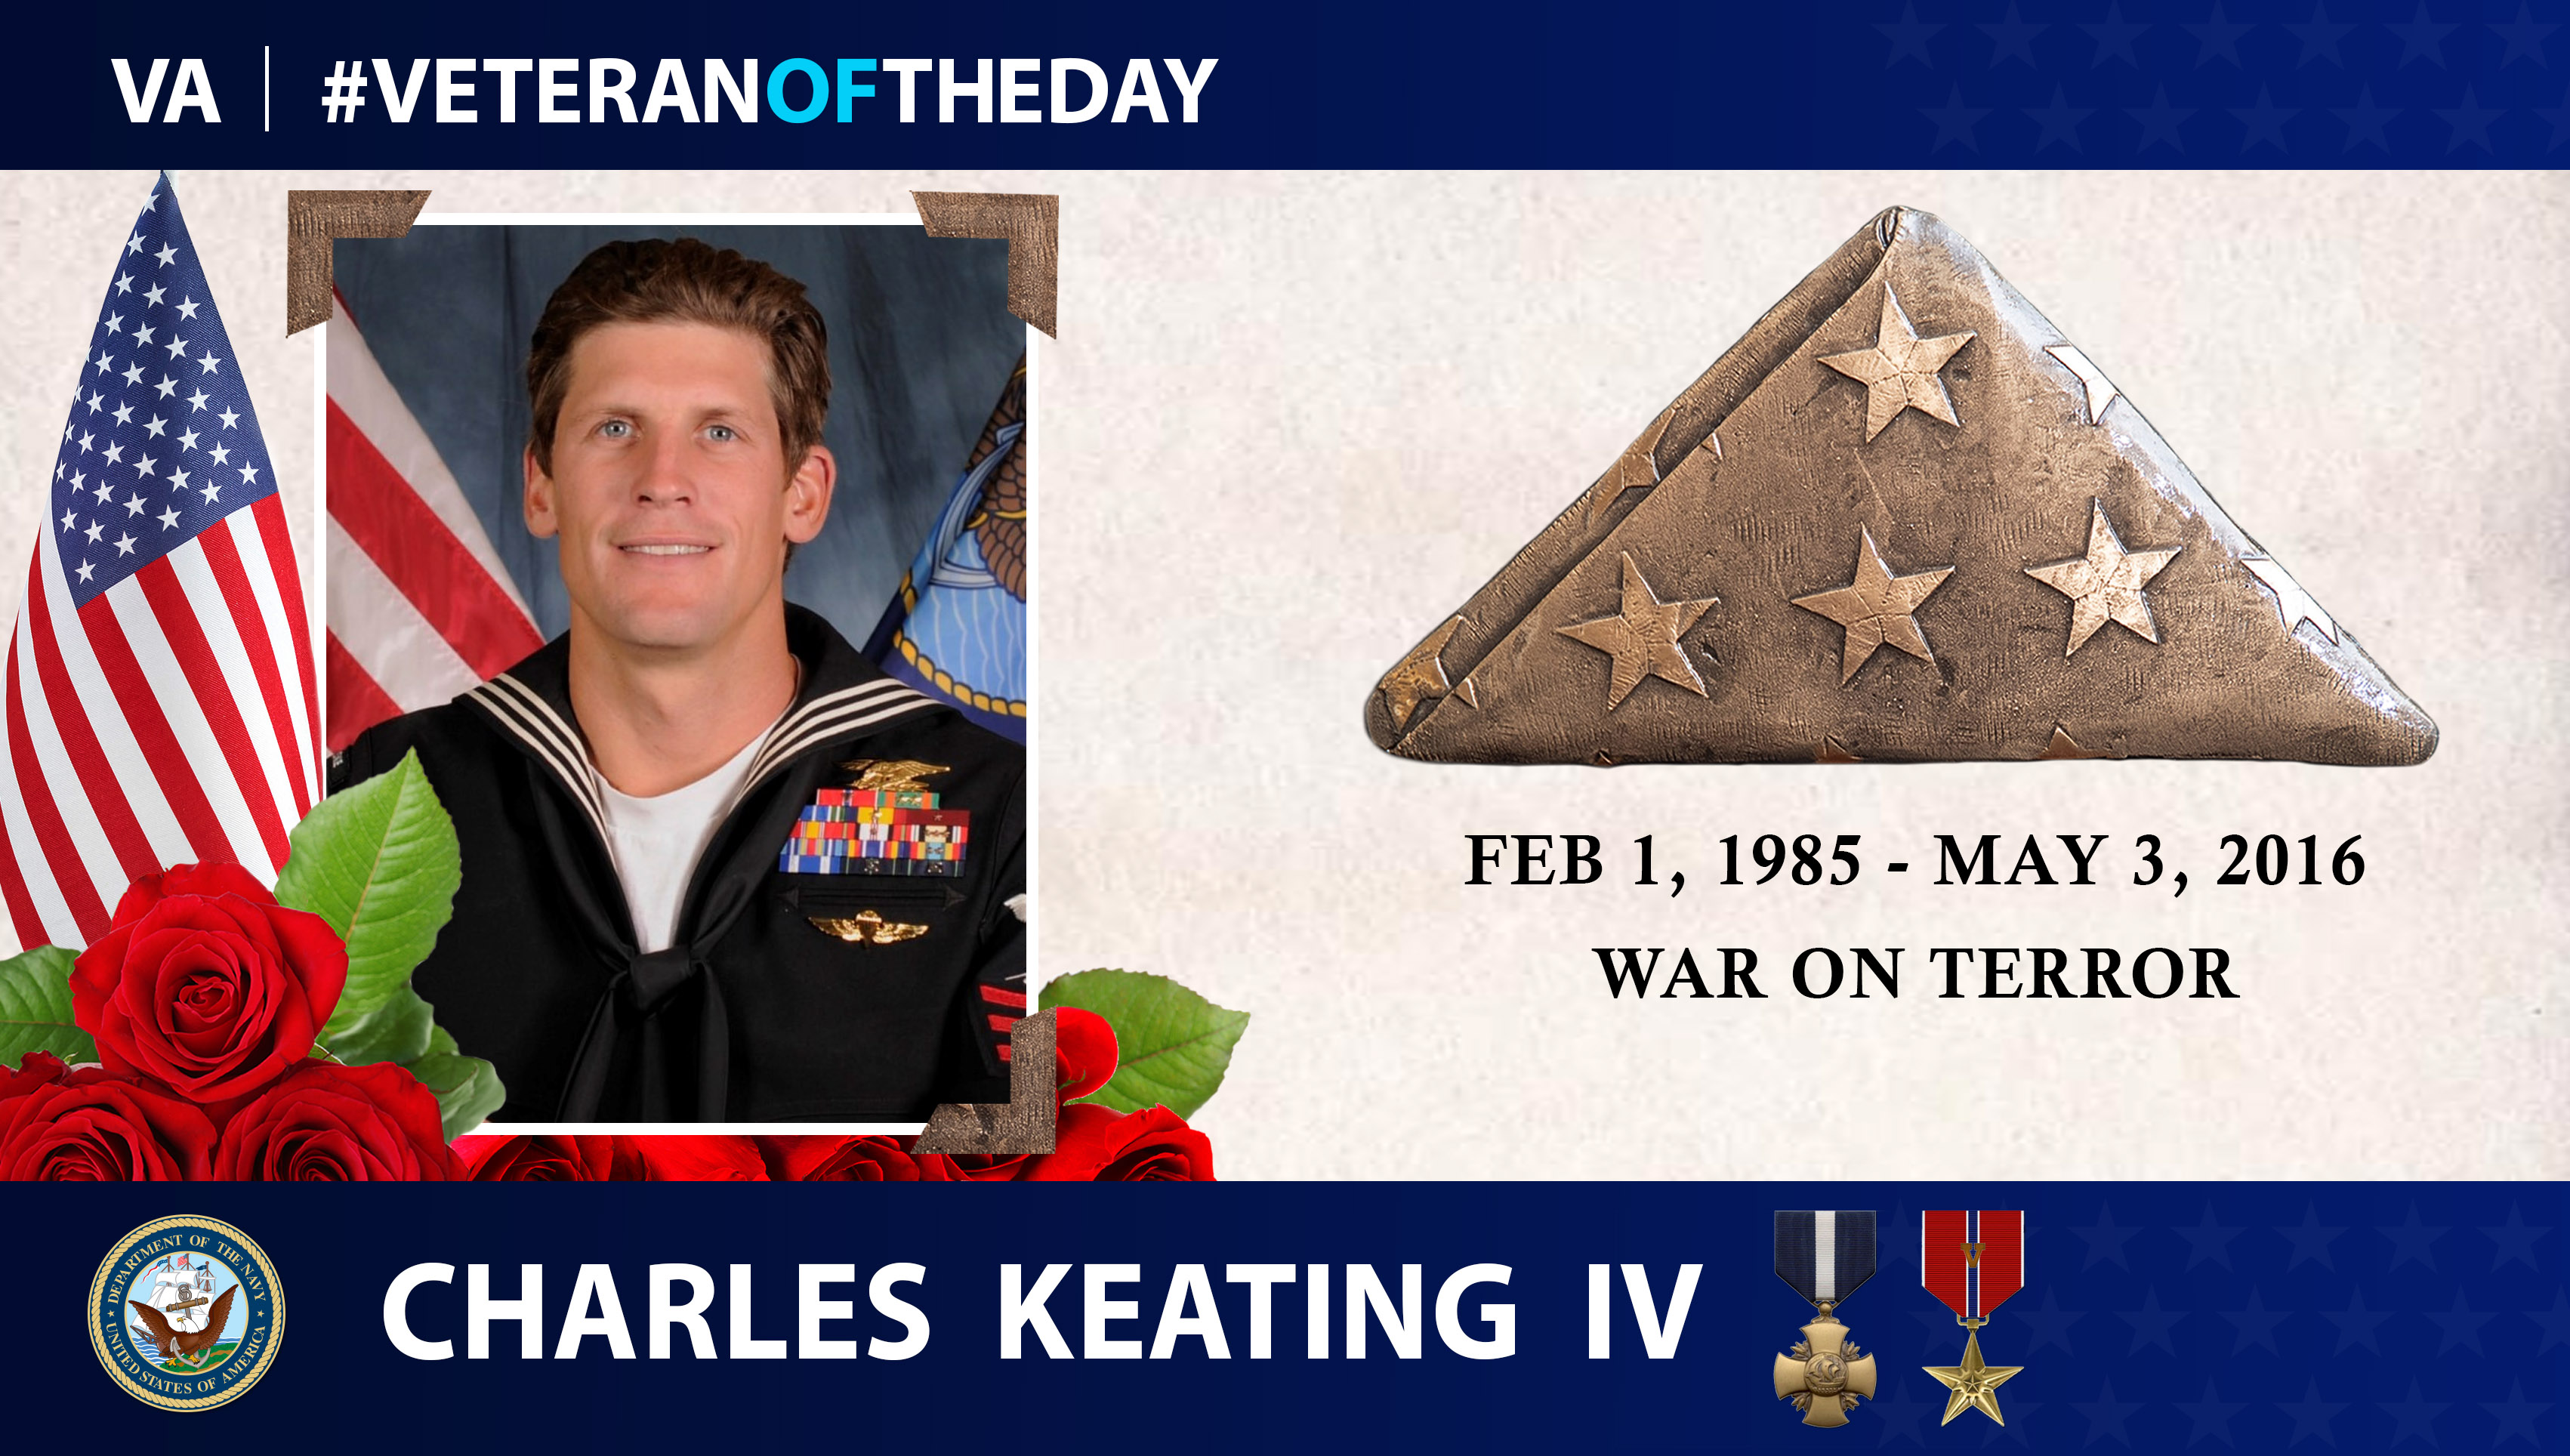 #VeteranOfTheDay Charles_Keating